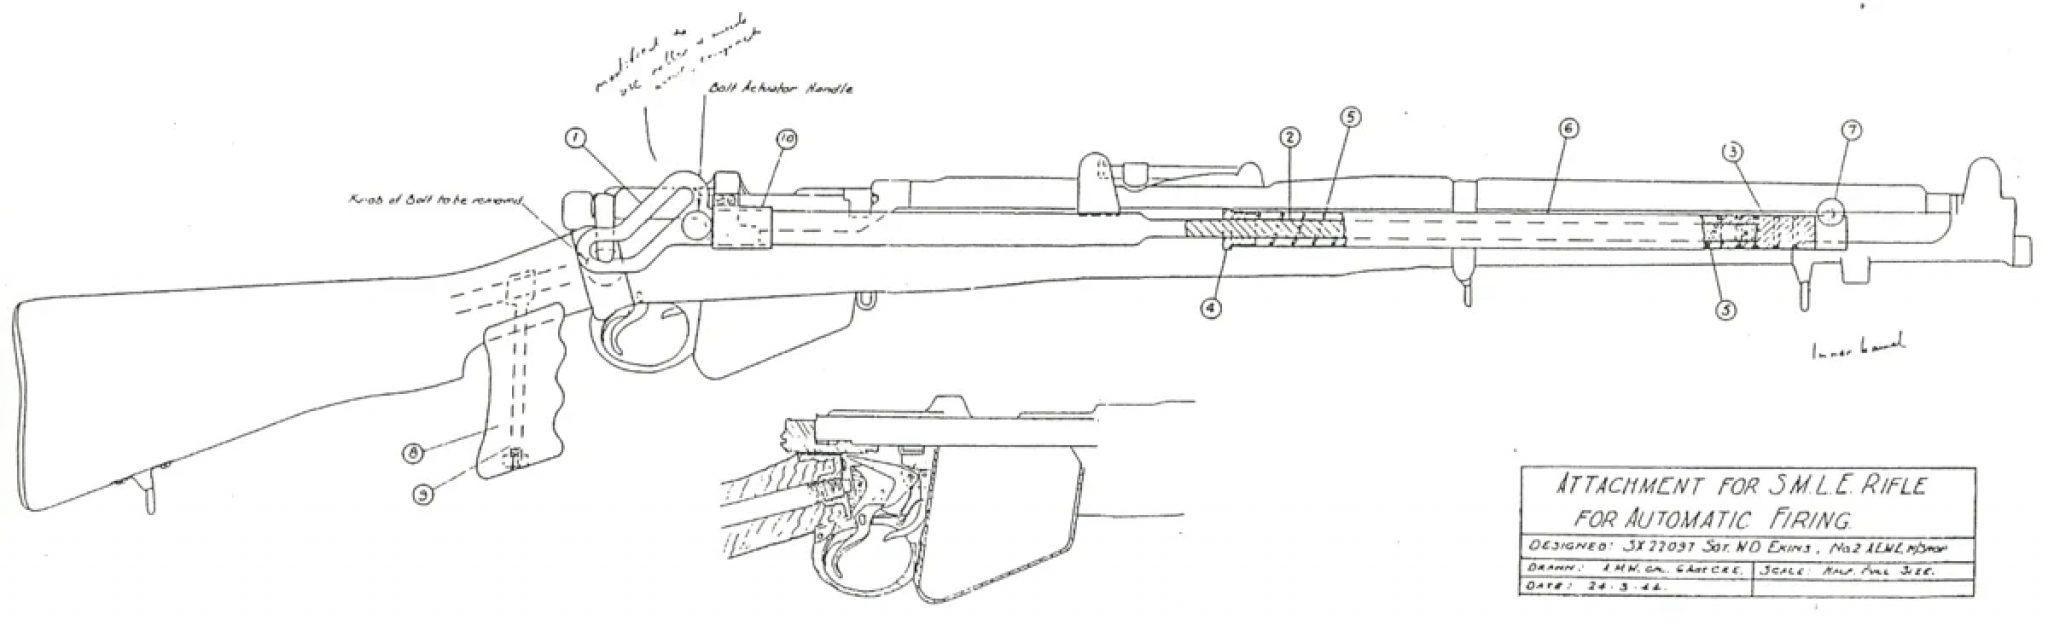 чертеж awp снайперской винтовки для дерева фото 103